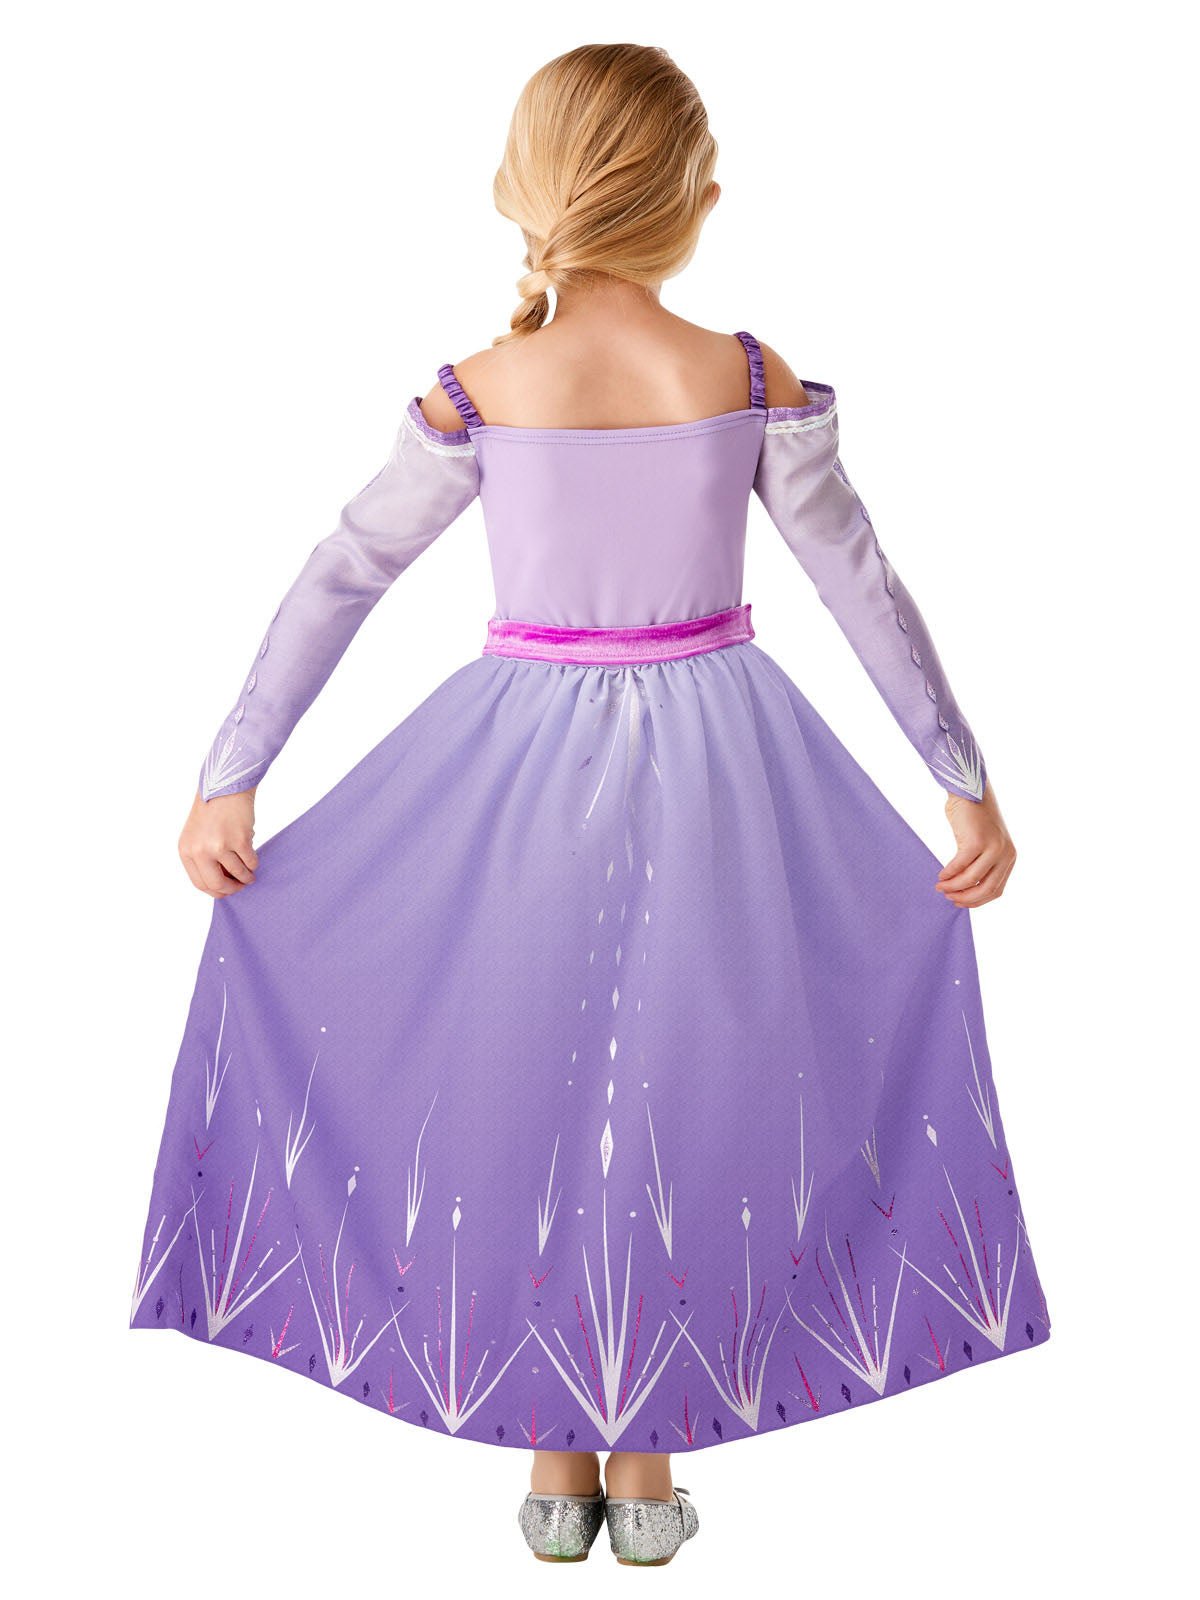 Frozen Fantasy Costume for Kid